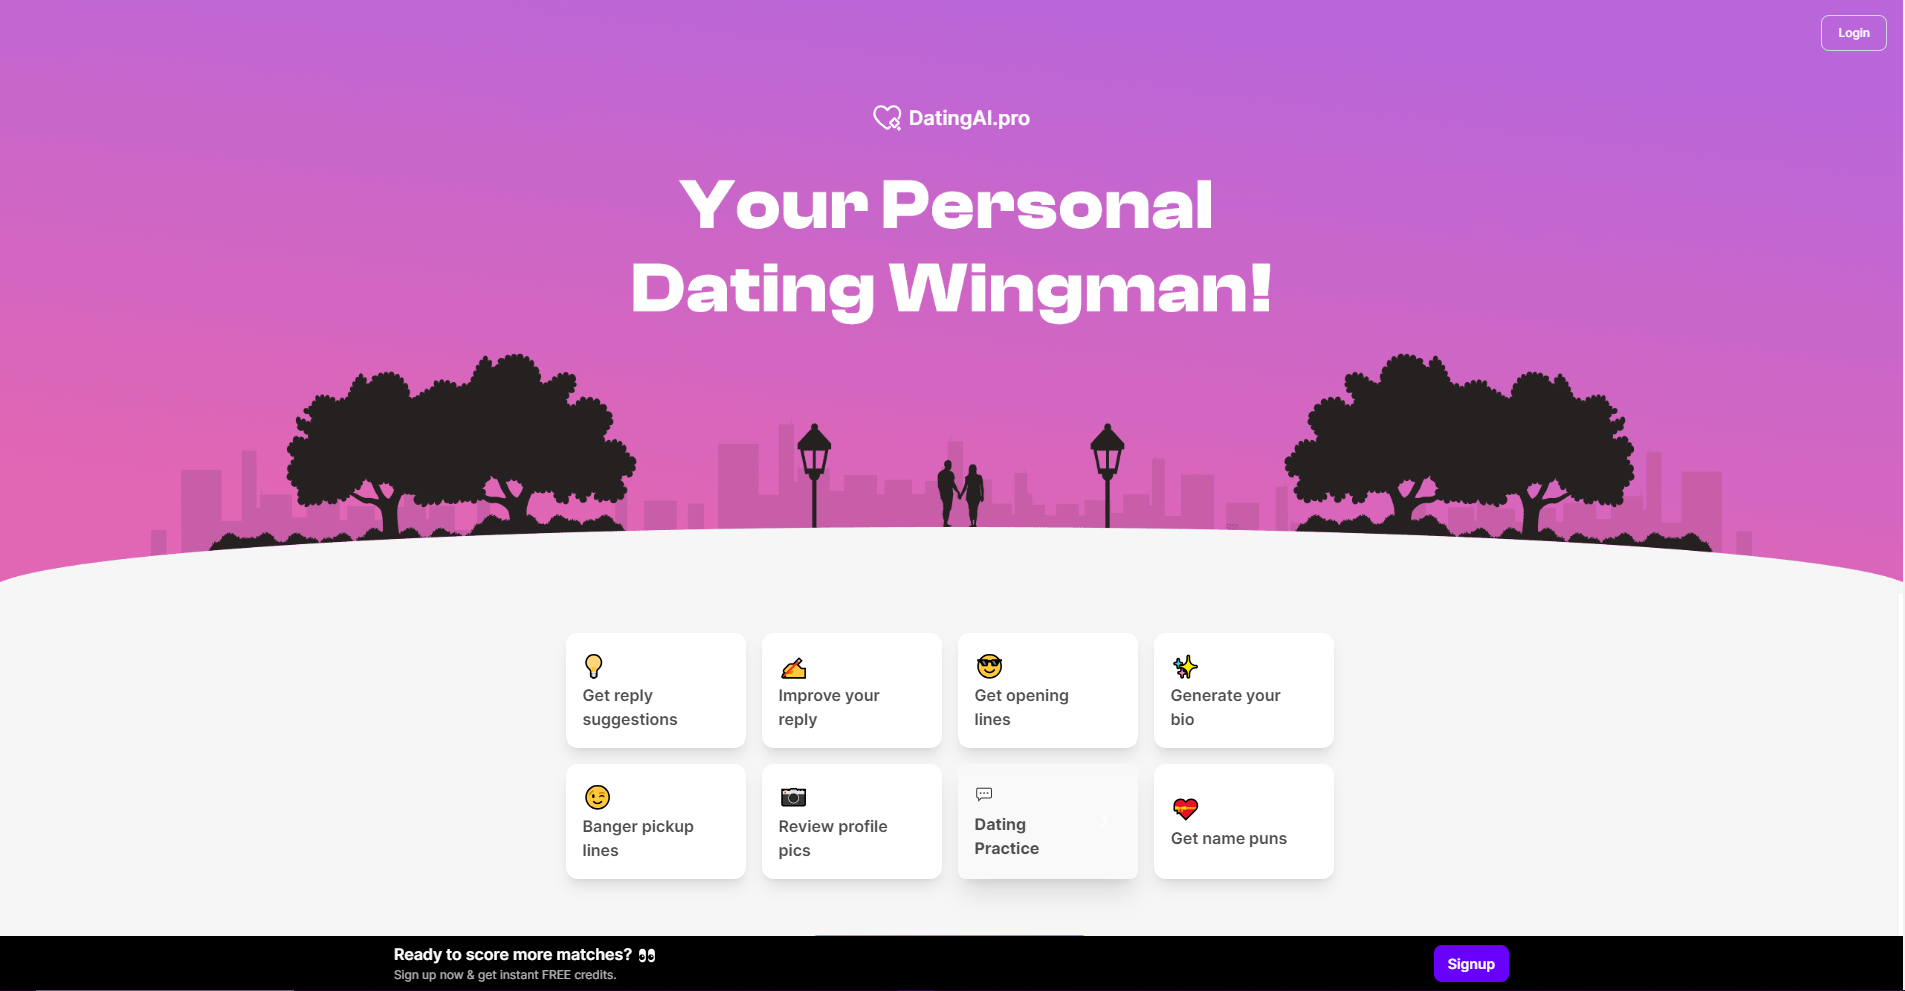 DatingAI Pro